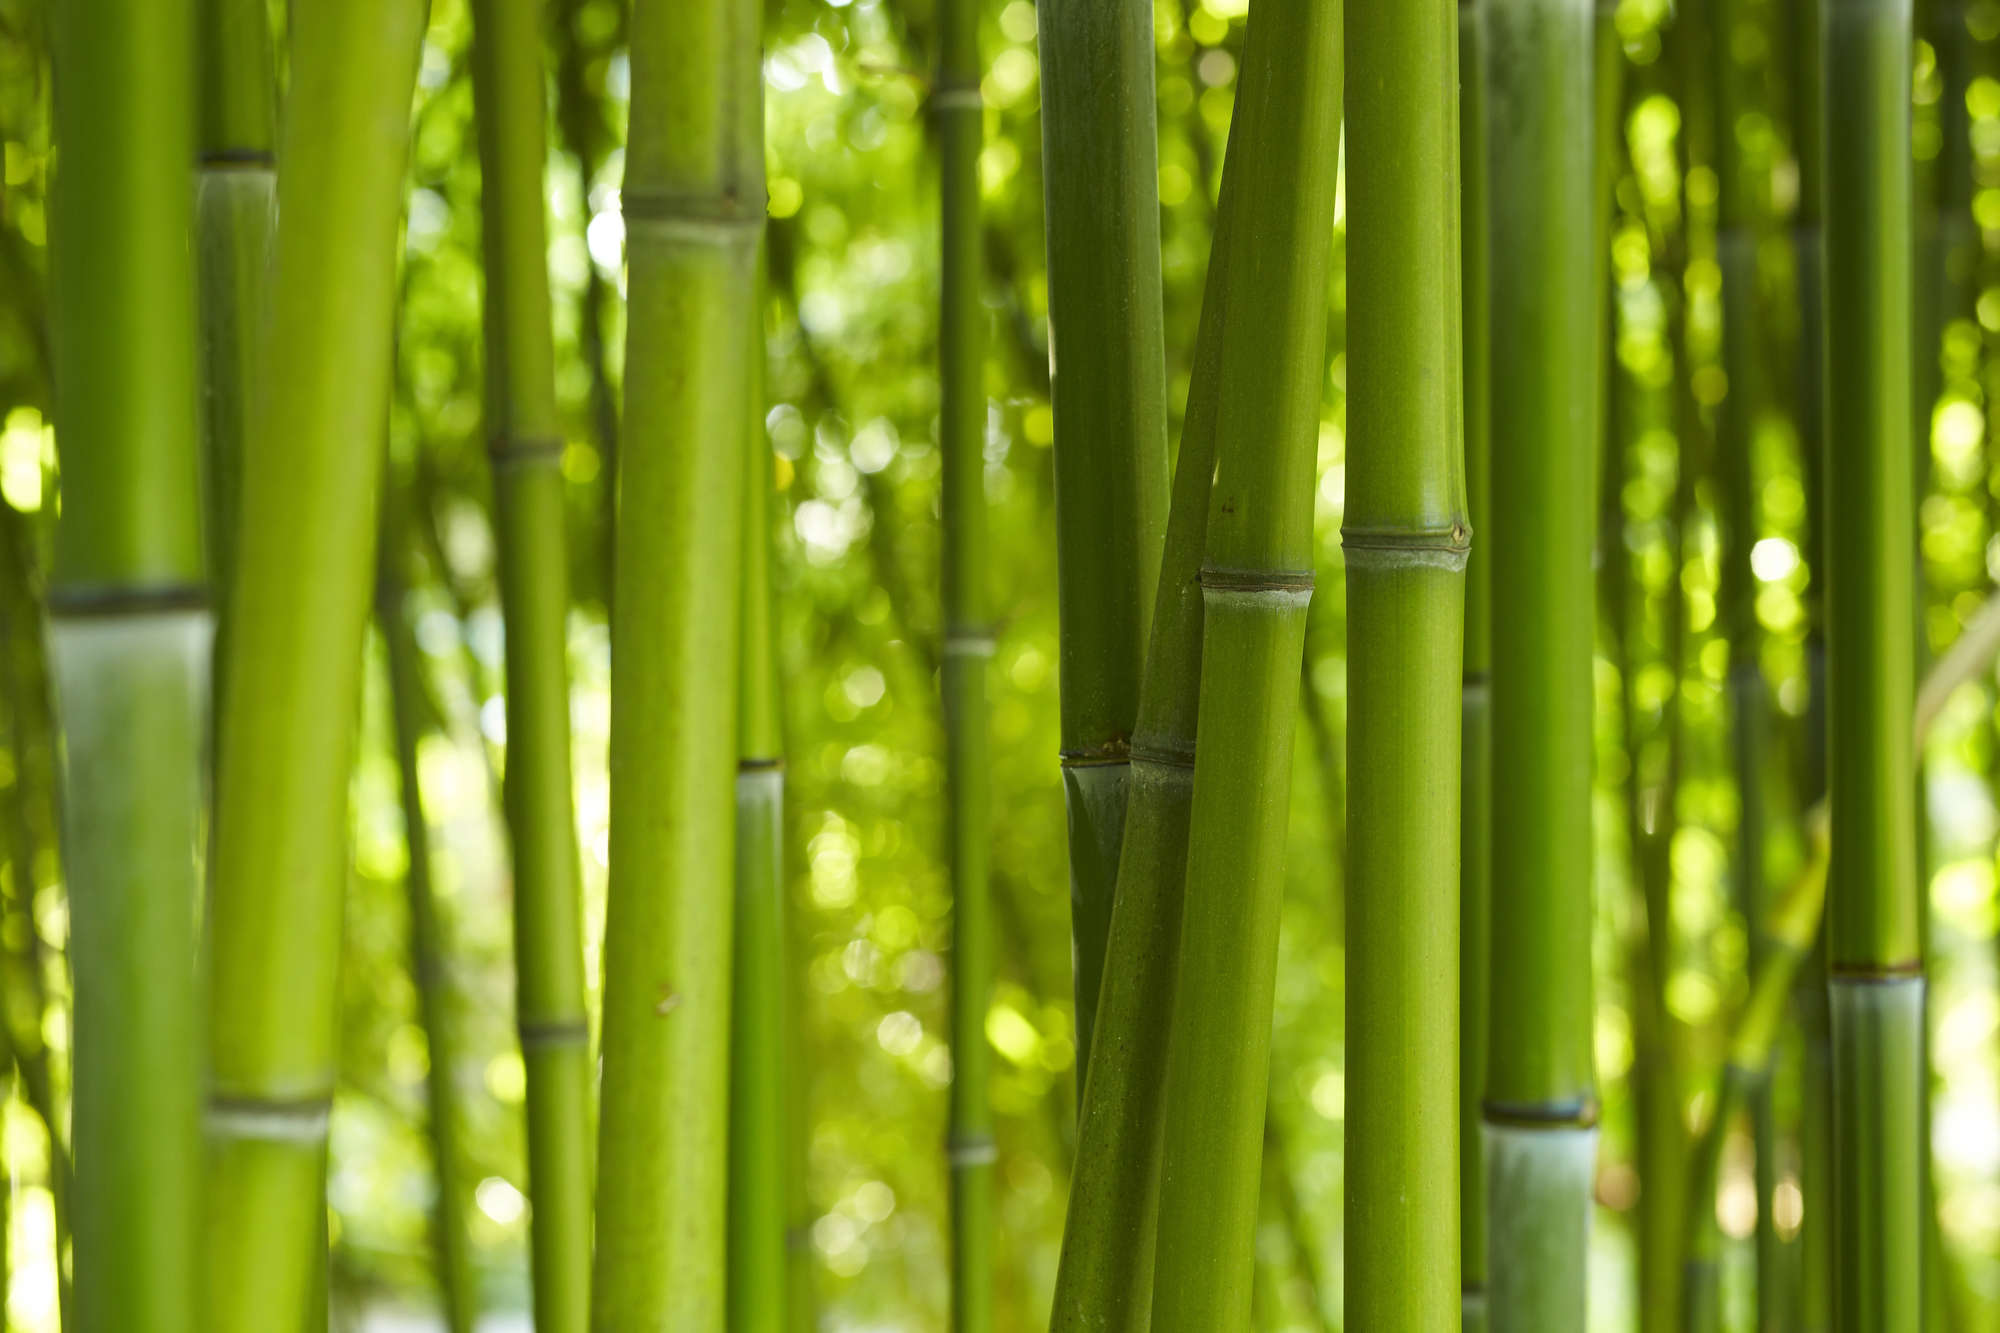             Natur Fototapete Bambus Nahaufnahme auf Matt Glattvlies
        